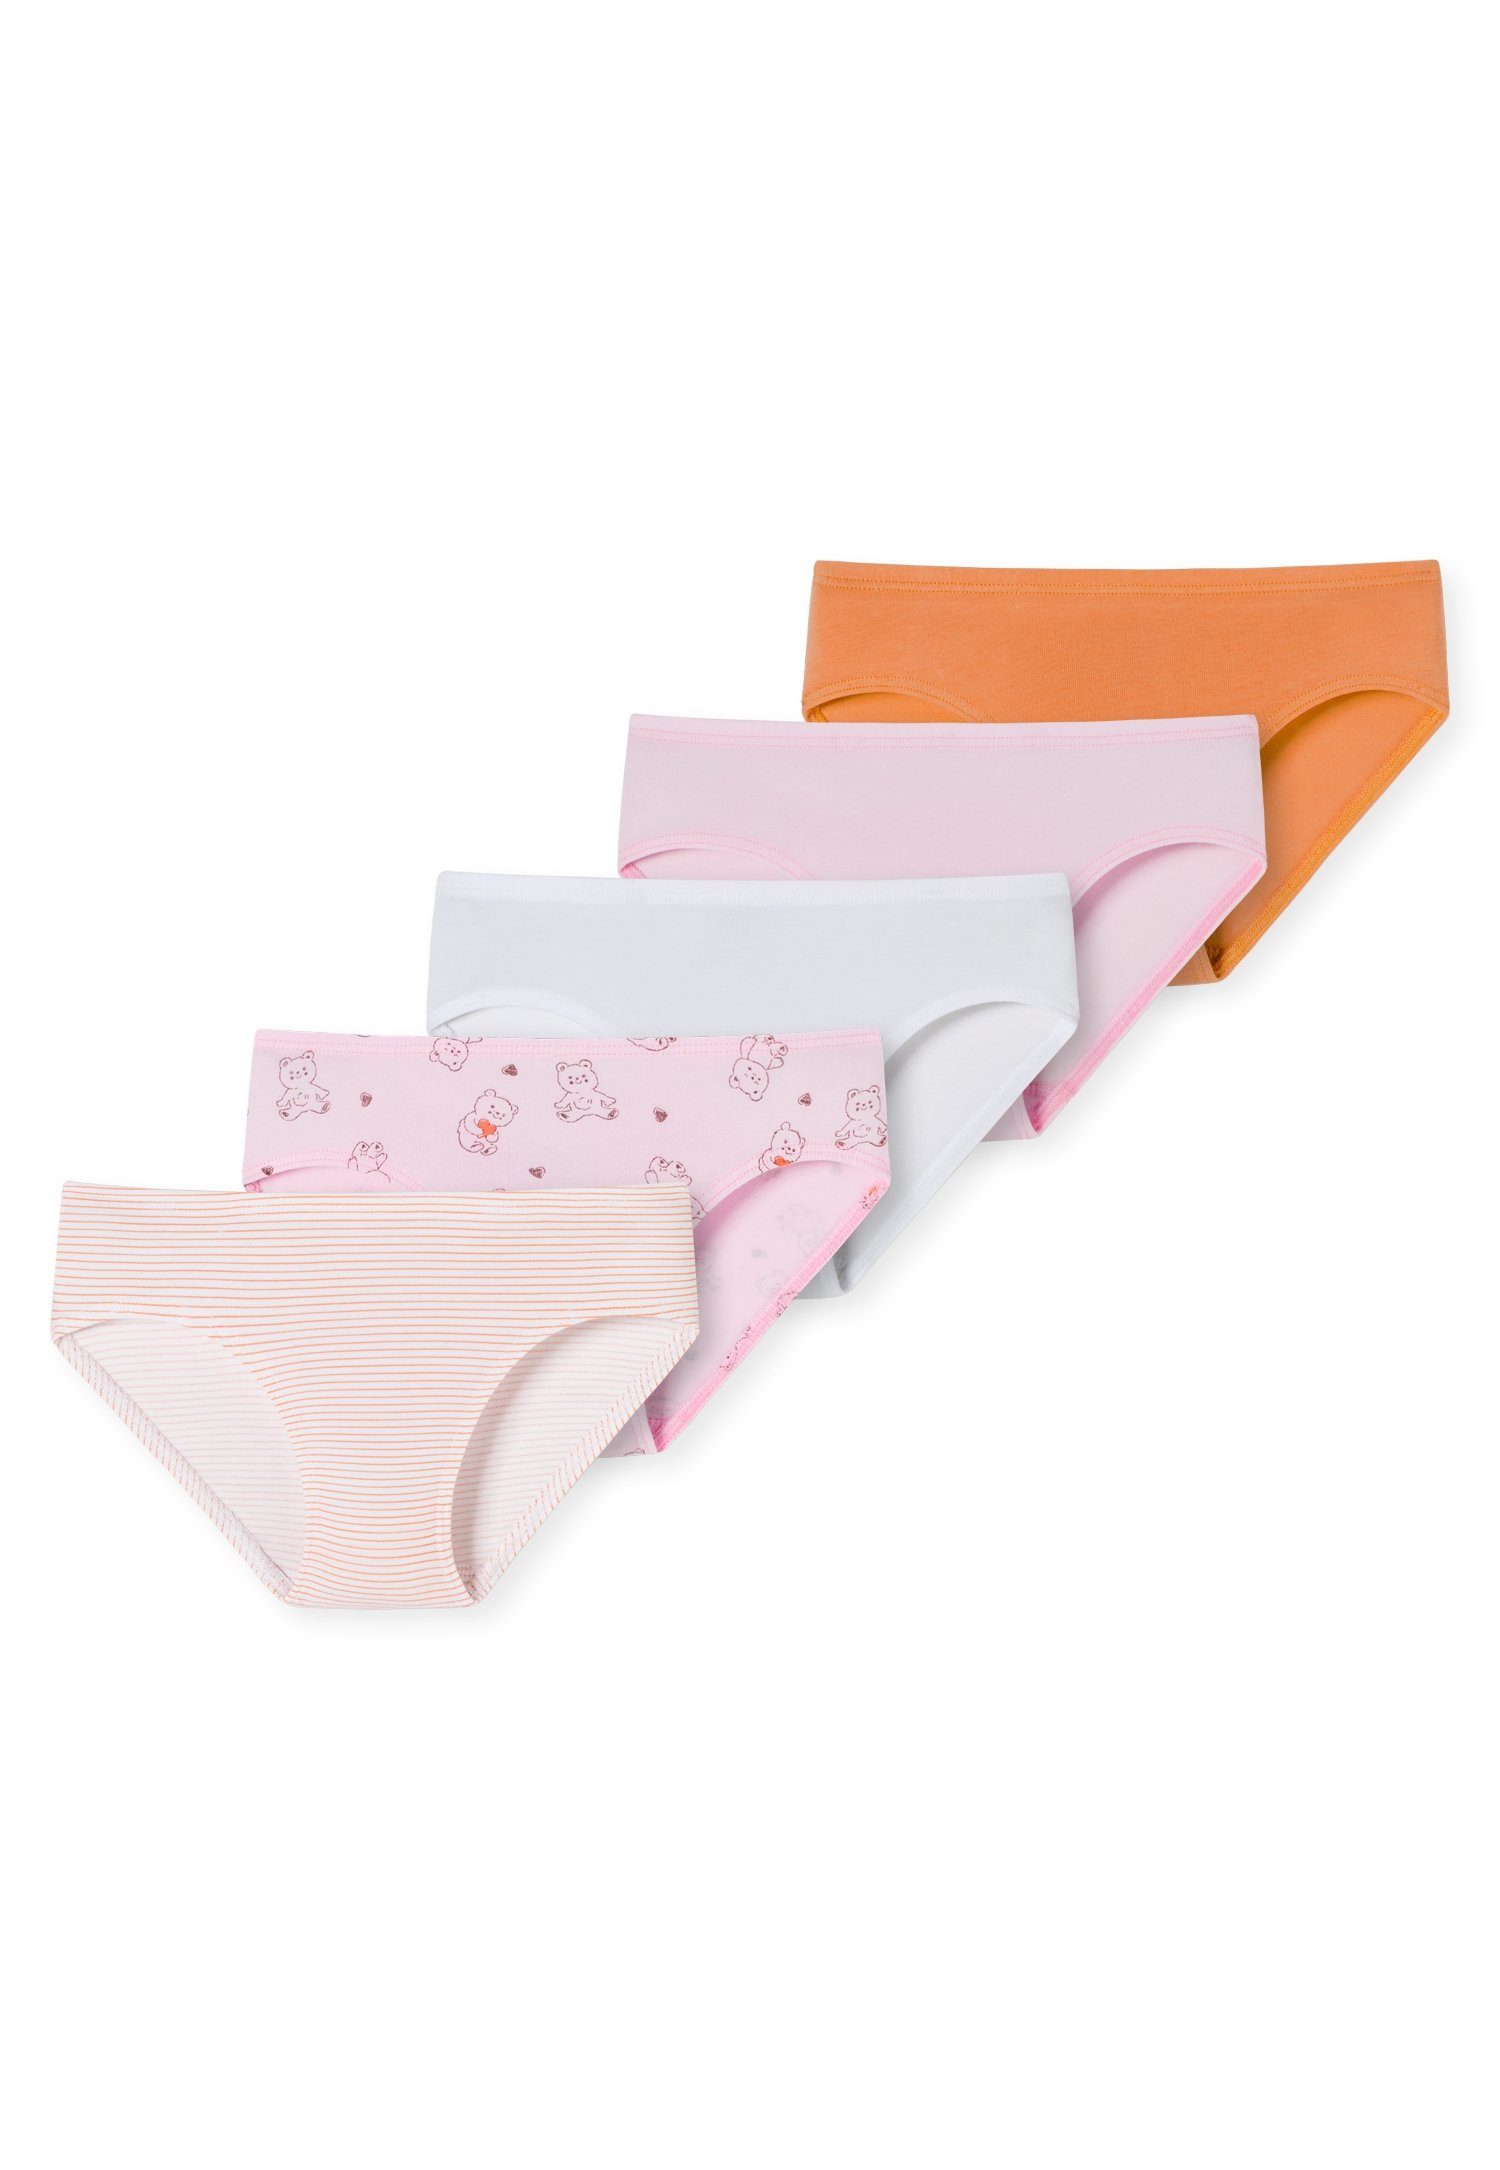 Schiesser Slip (5er-Pack) rosa/orange Softbund mit